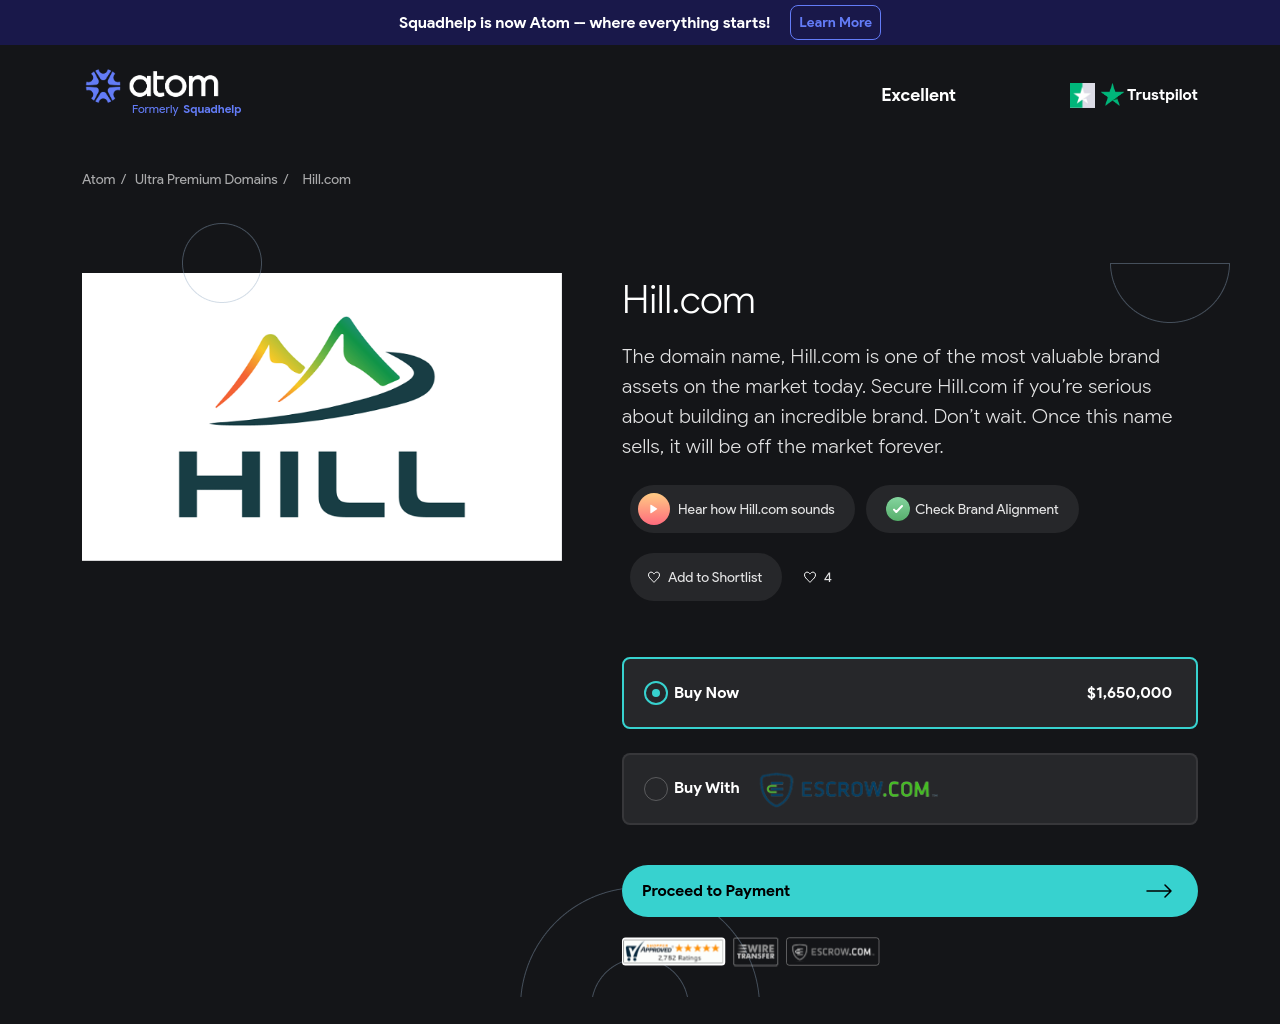 hill.com